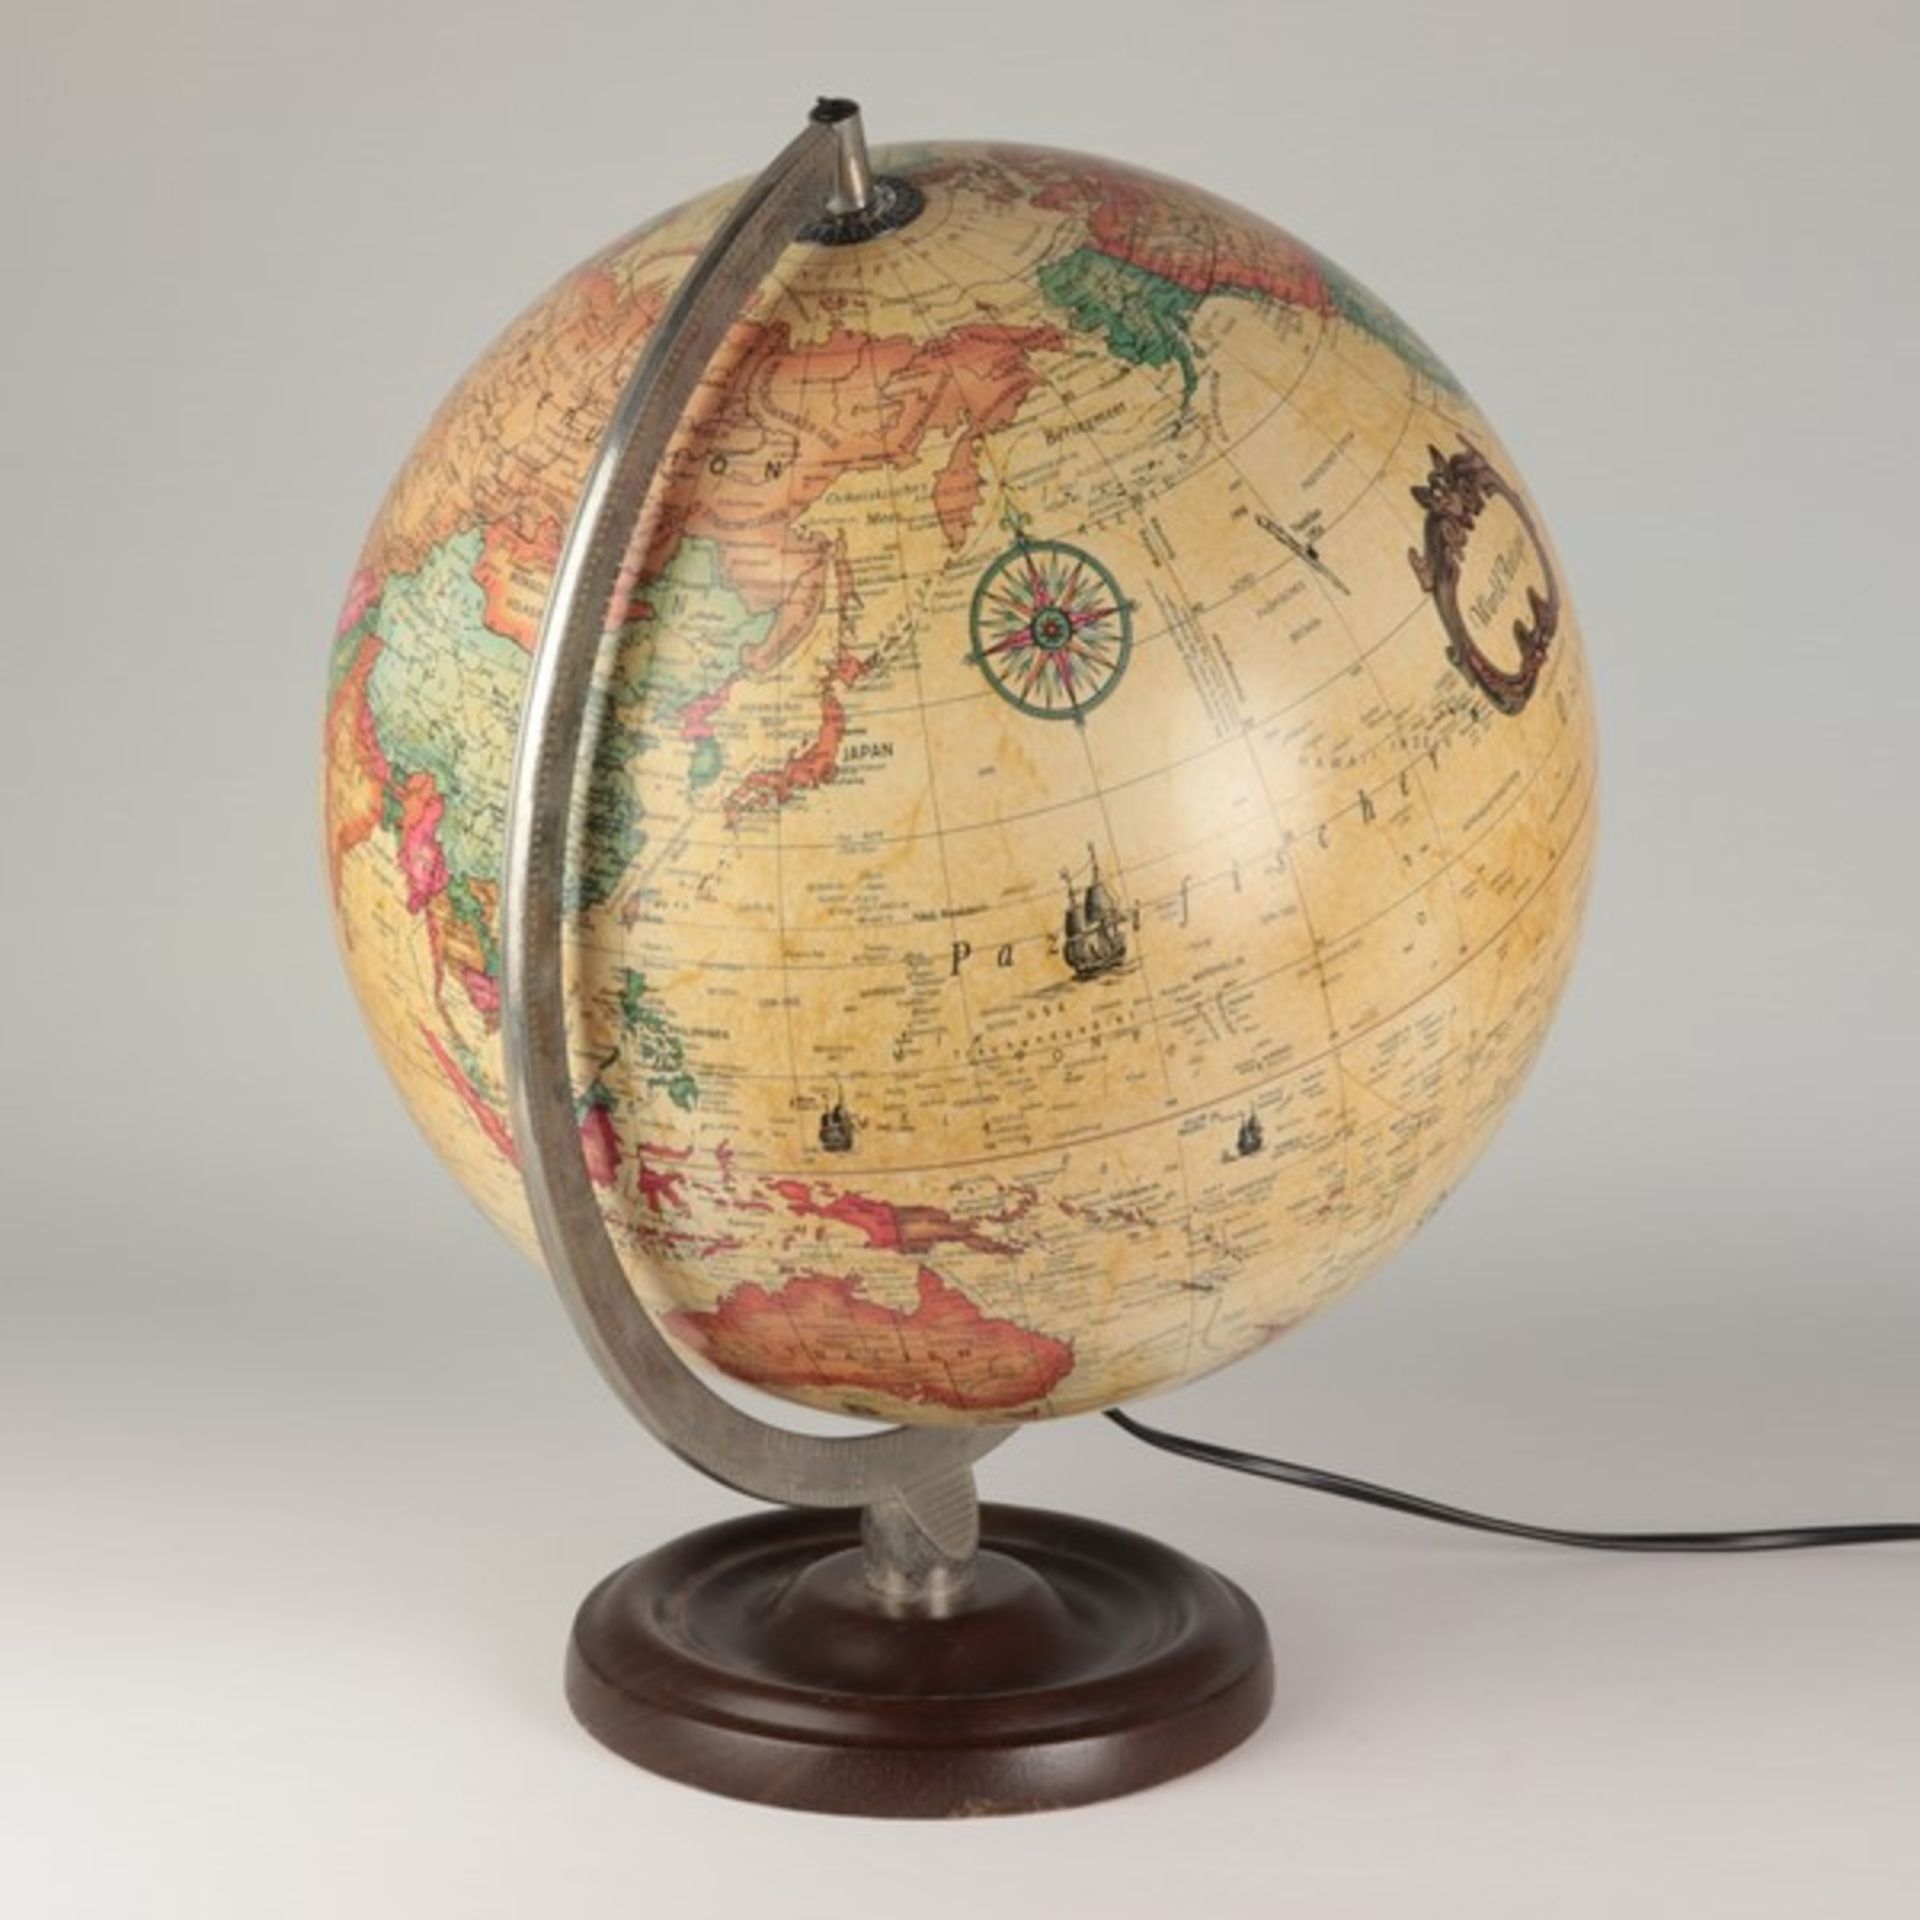 Globusdat. 1980, us. Klebeetikett scan globe Type II, made in Denmark, kartographiert v. Karl F. - Bild 2 aus 8